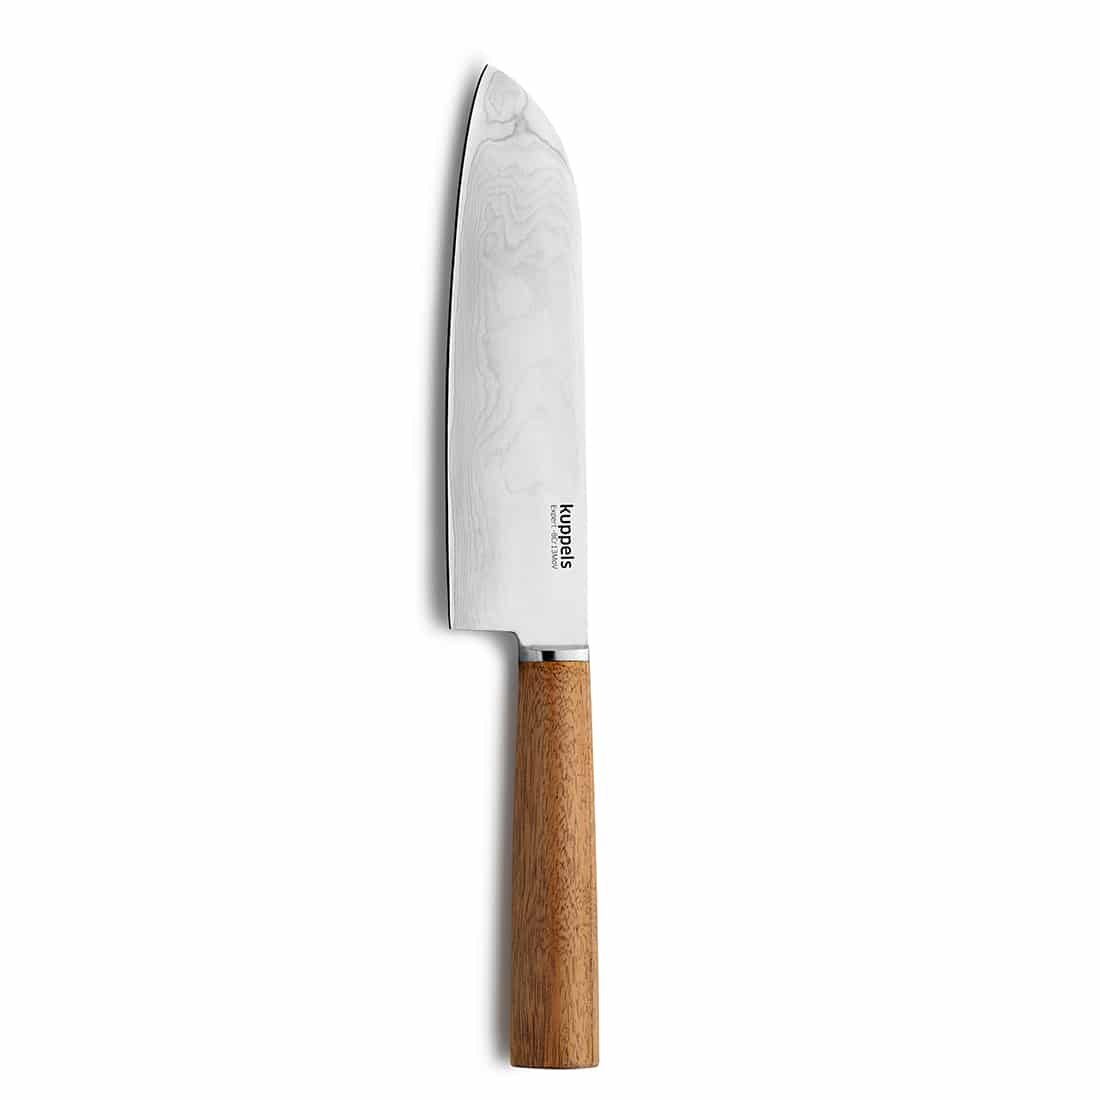 EXPERT Messerset 3-teilig holz Messerset mit Gravur